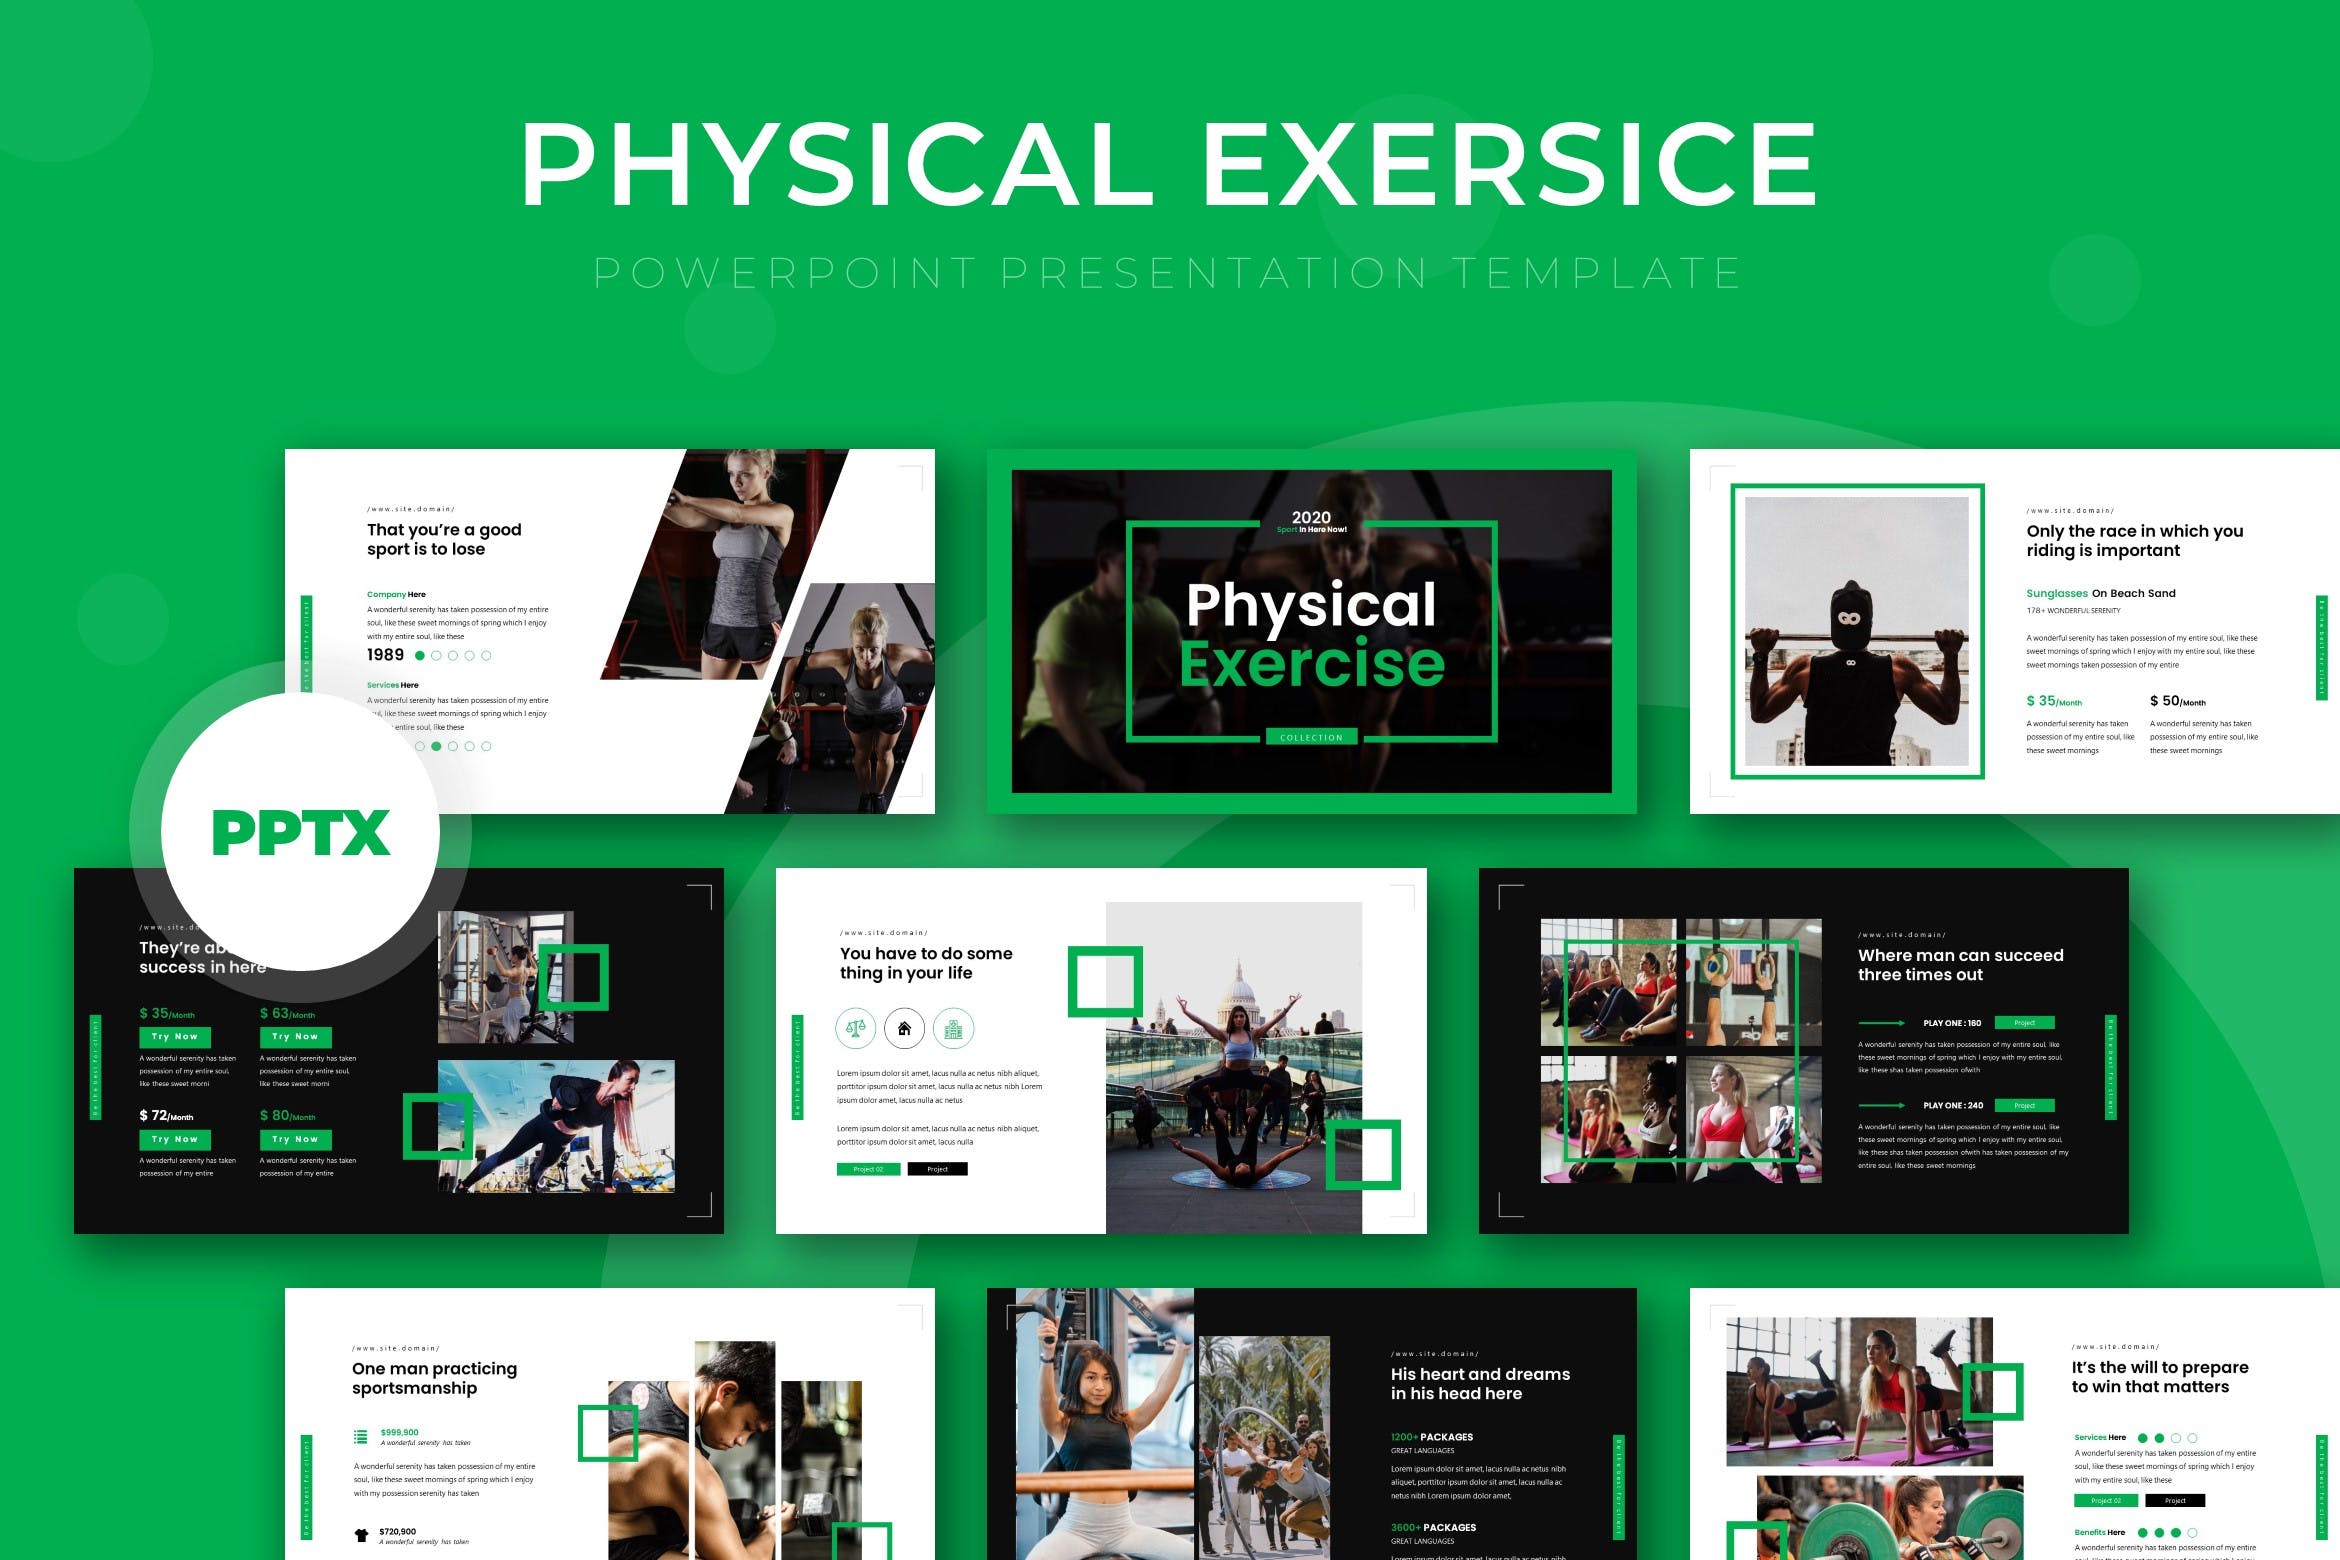 健身教程/健身俱乐部Google演示模板16图库精选 Physical – Google Slide Template插图